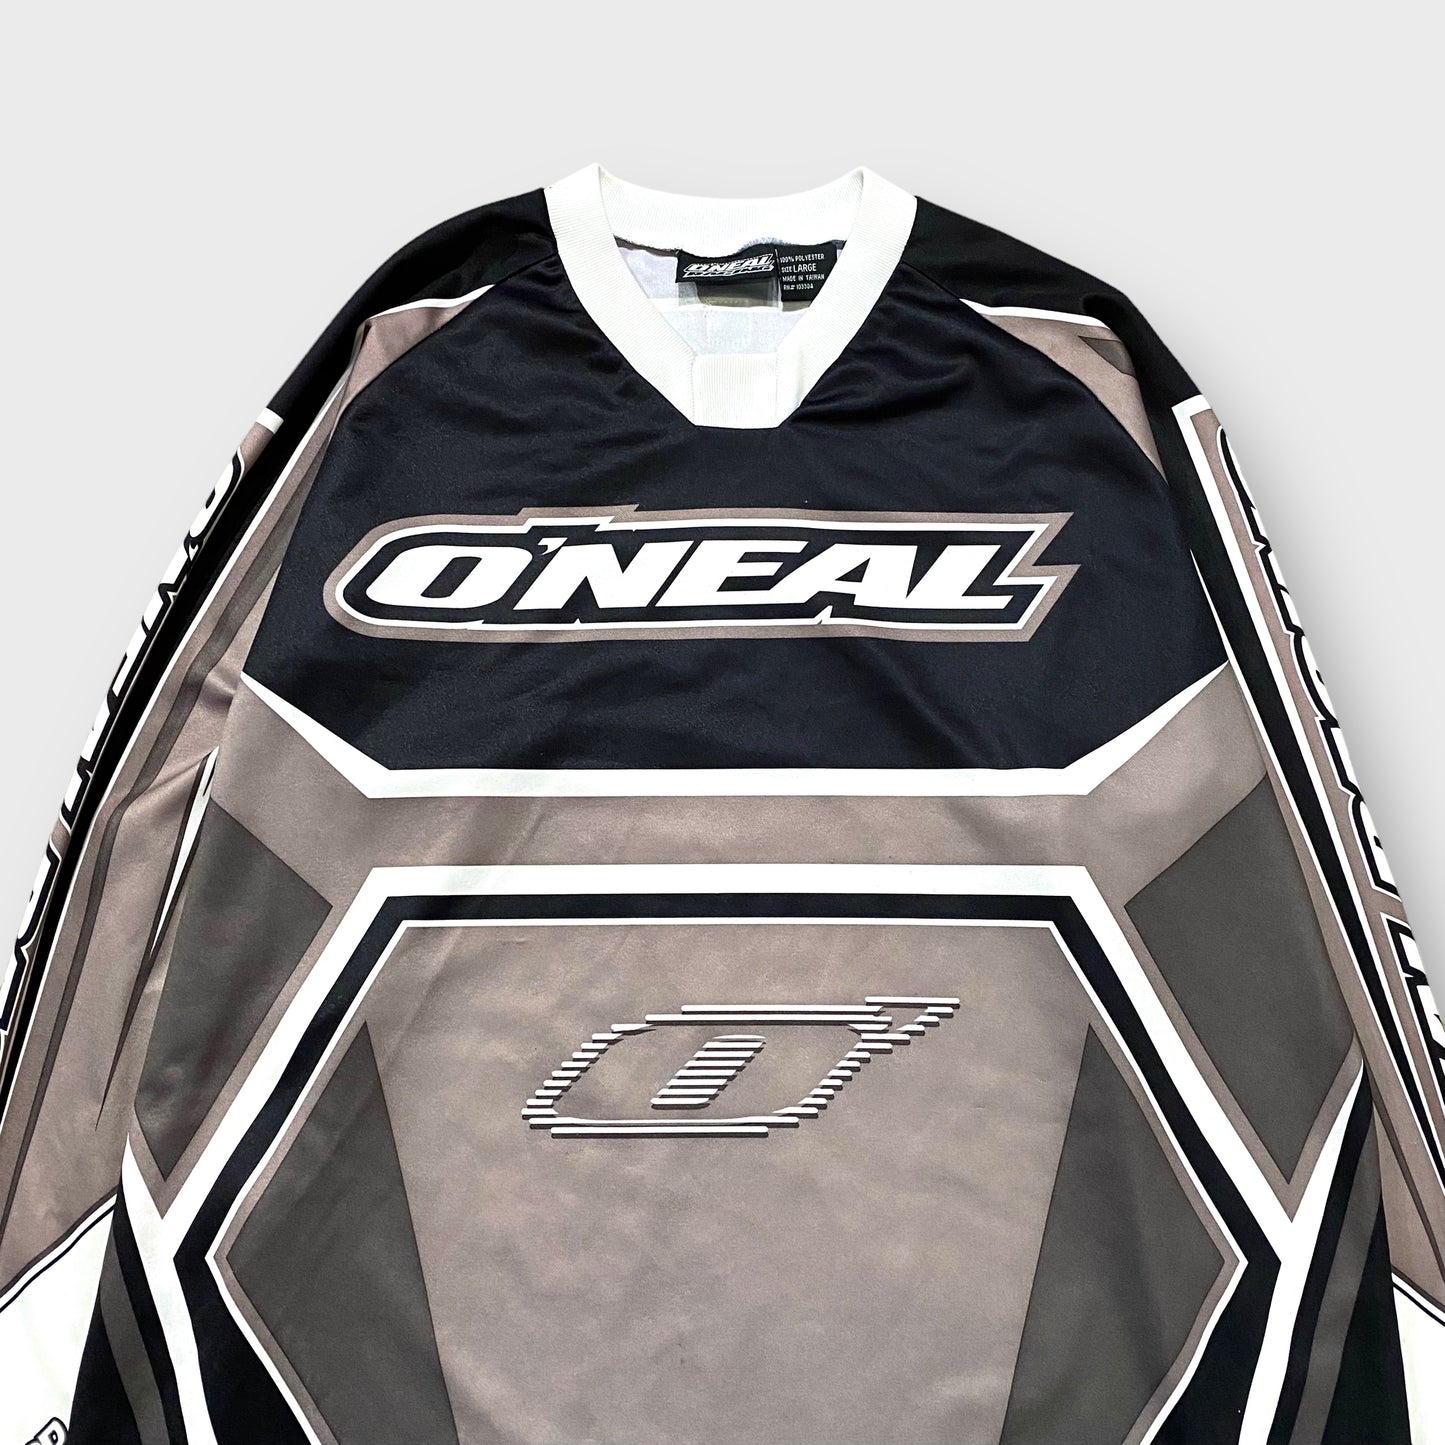 "O'NEAL" Logo design racing top